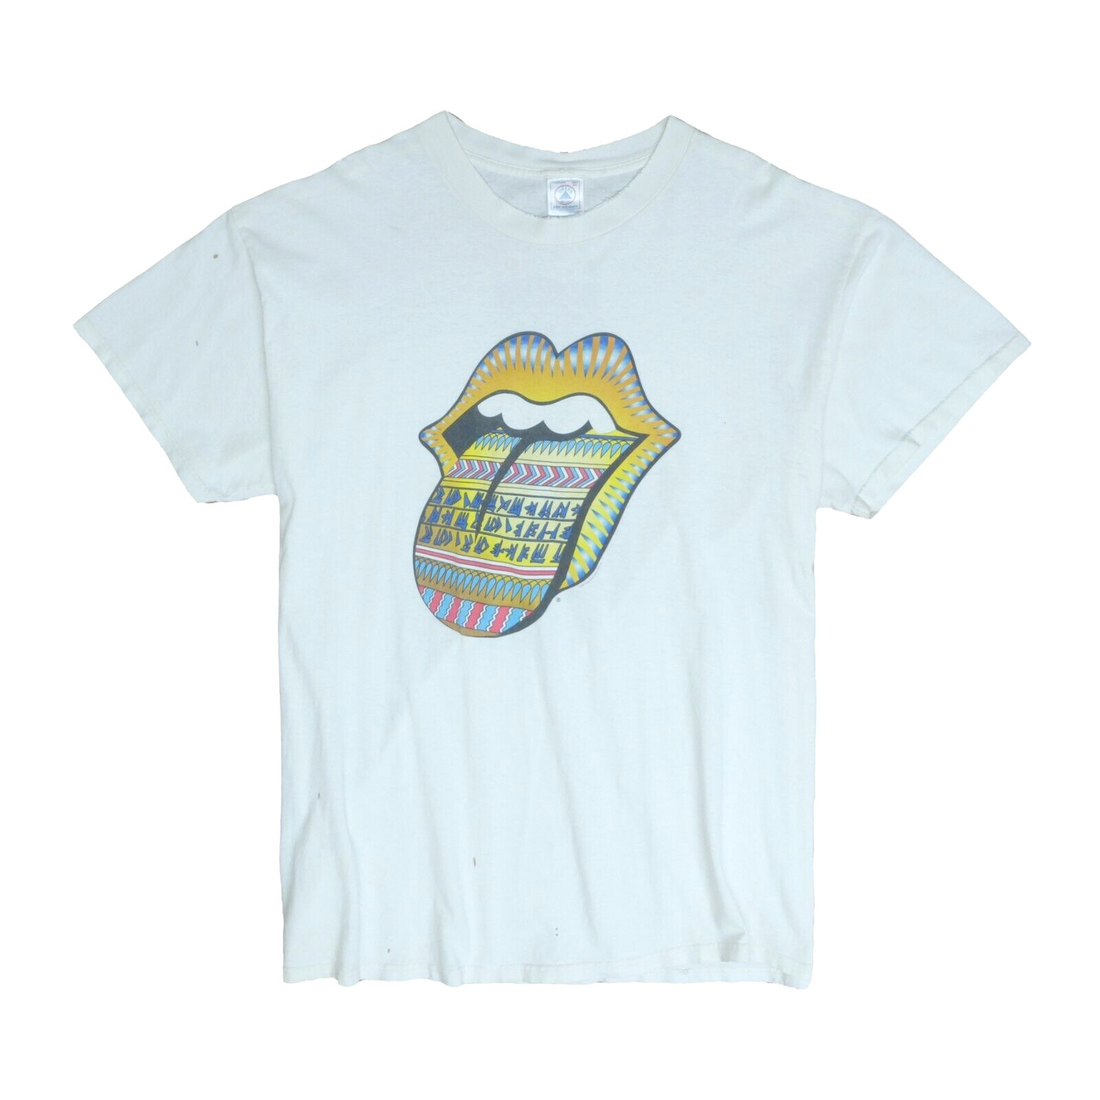 Vintage The Rolling Stones Bridges To Babylon World Tour T-Shirt XL 1998 90s